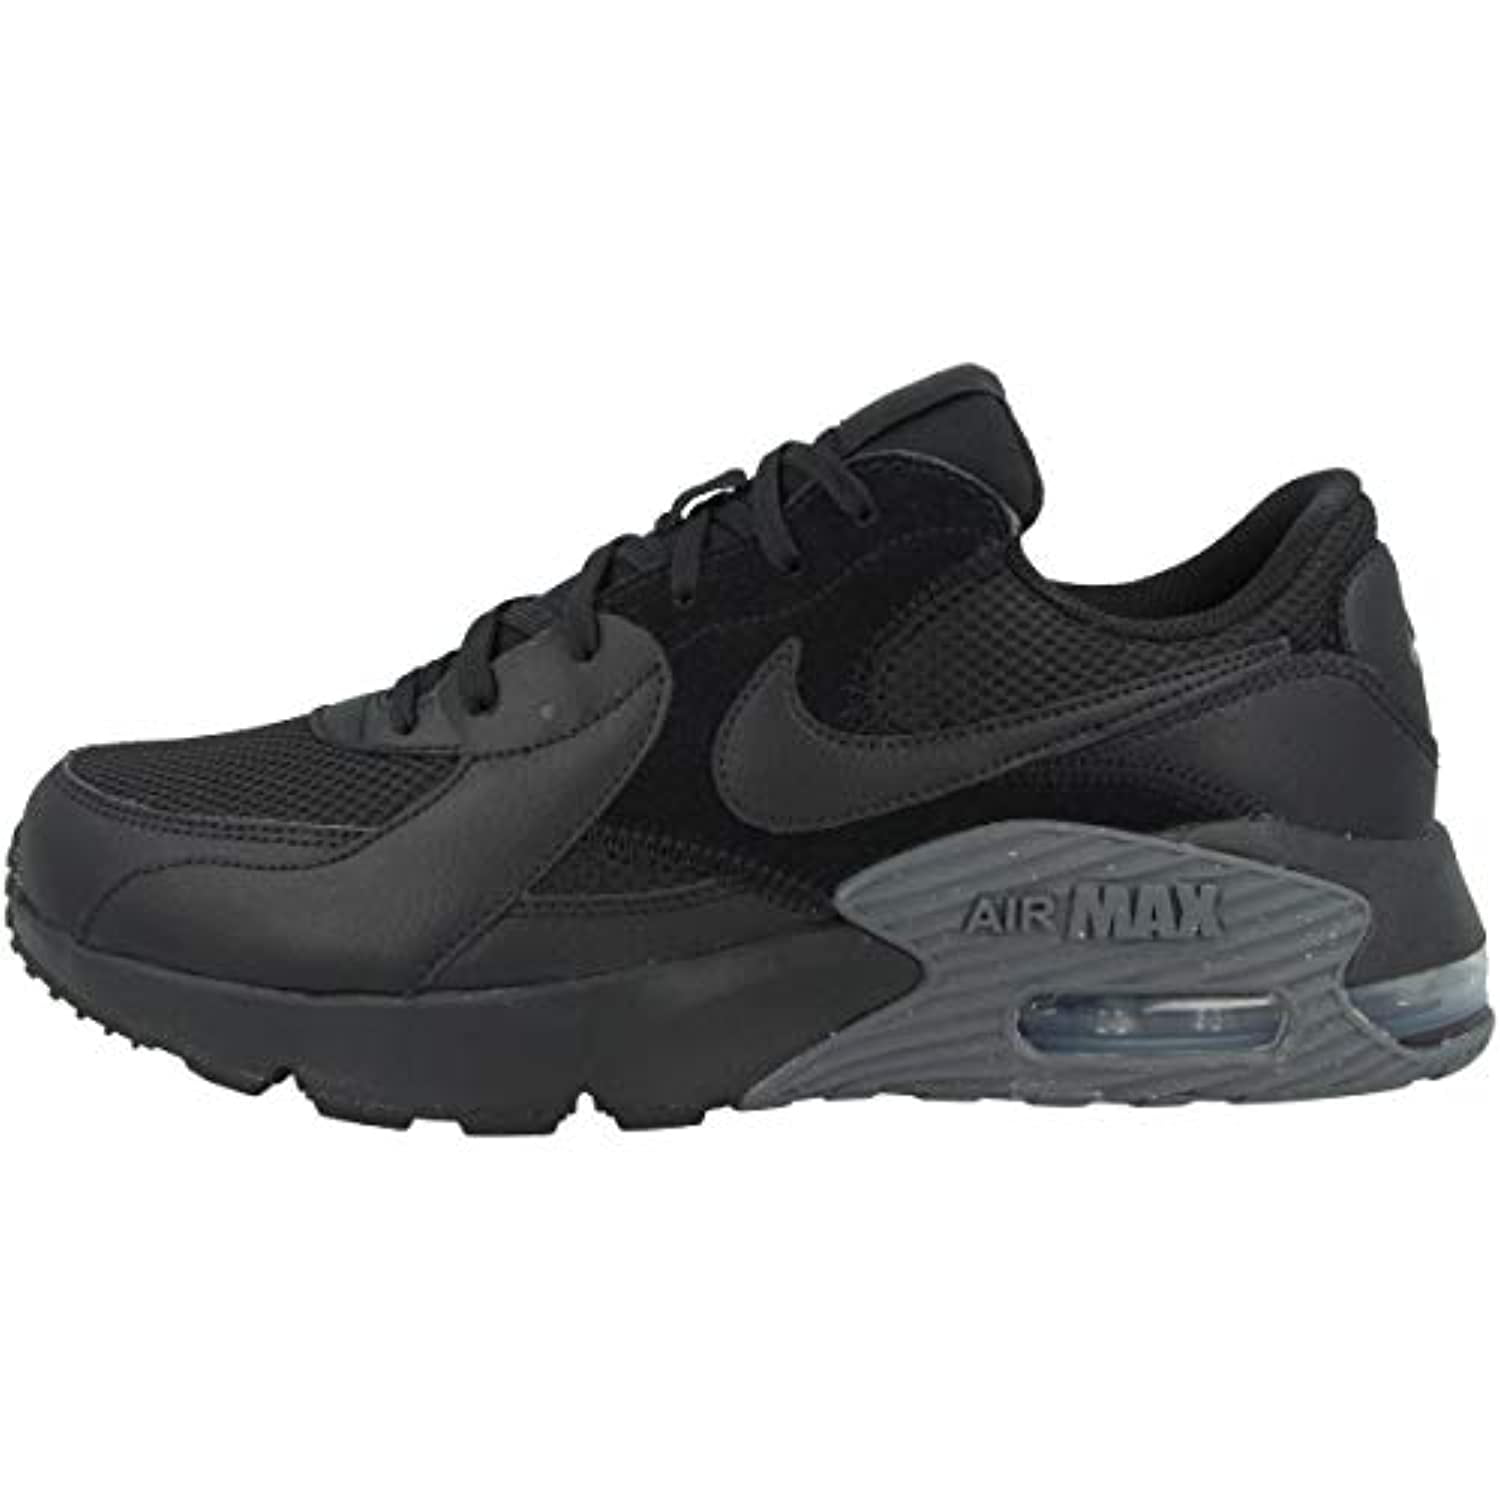 Oude tijden West Groen Nike Men's Low-Top Sneakers, Black Black Dark Gray, 8 US - Walmart.com